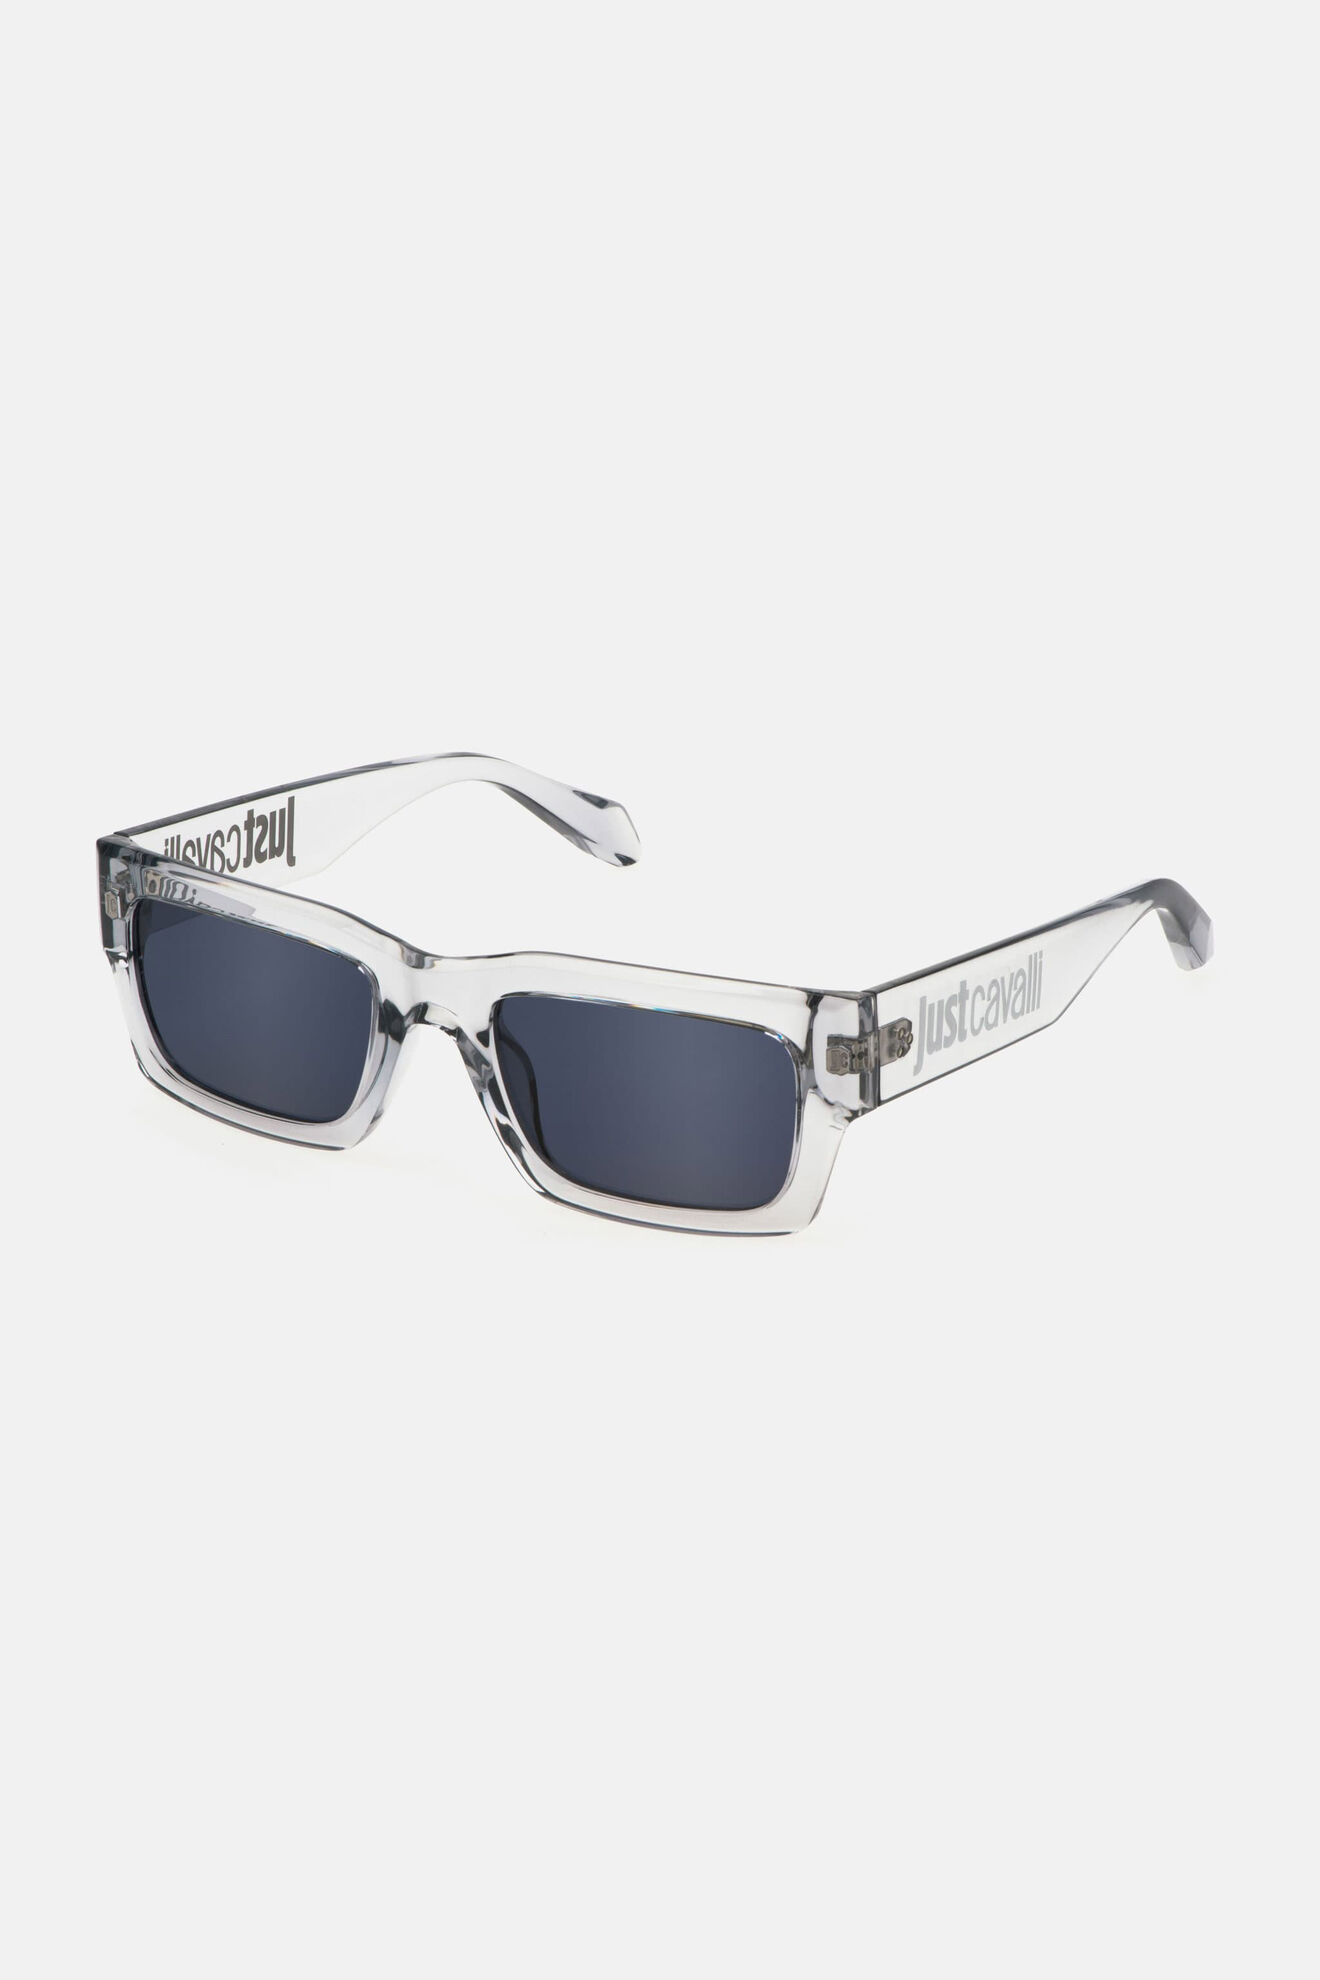 Óculos de Grau - JUST CAVALLI - VJC010 700Y 52 - PRETO - Pró Olhar